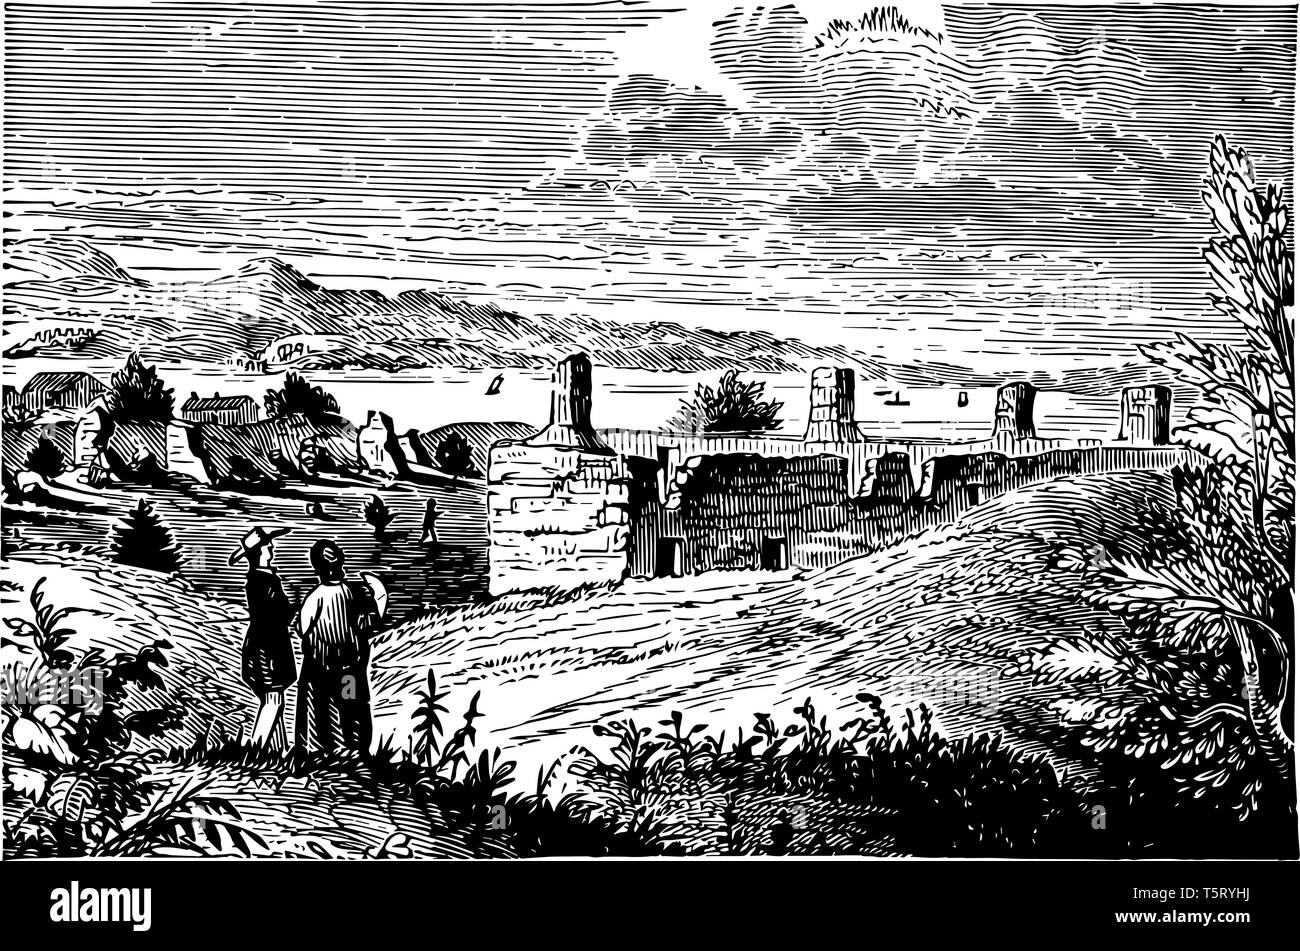 En 1857, Crown Point était un fort construit en 1759 sur le lac Champlain pour sécuriser la région contre l'anglais vintage le schéma. Illustration de Vecteur